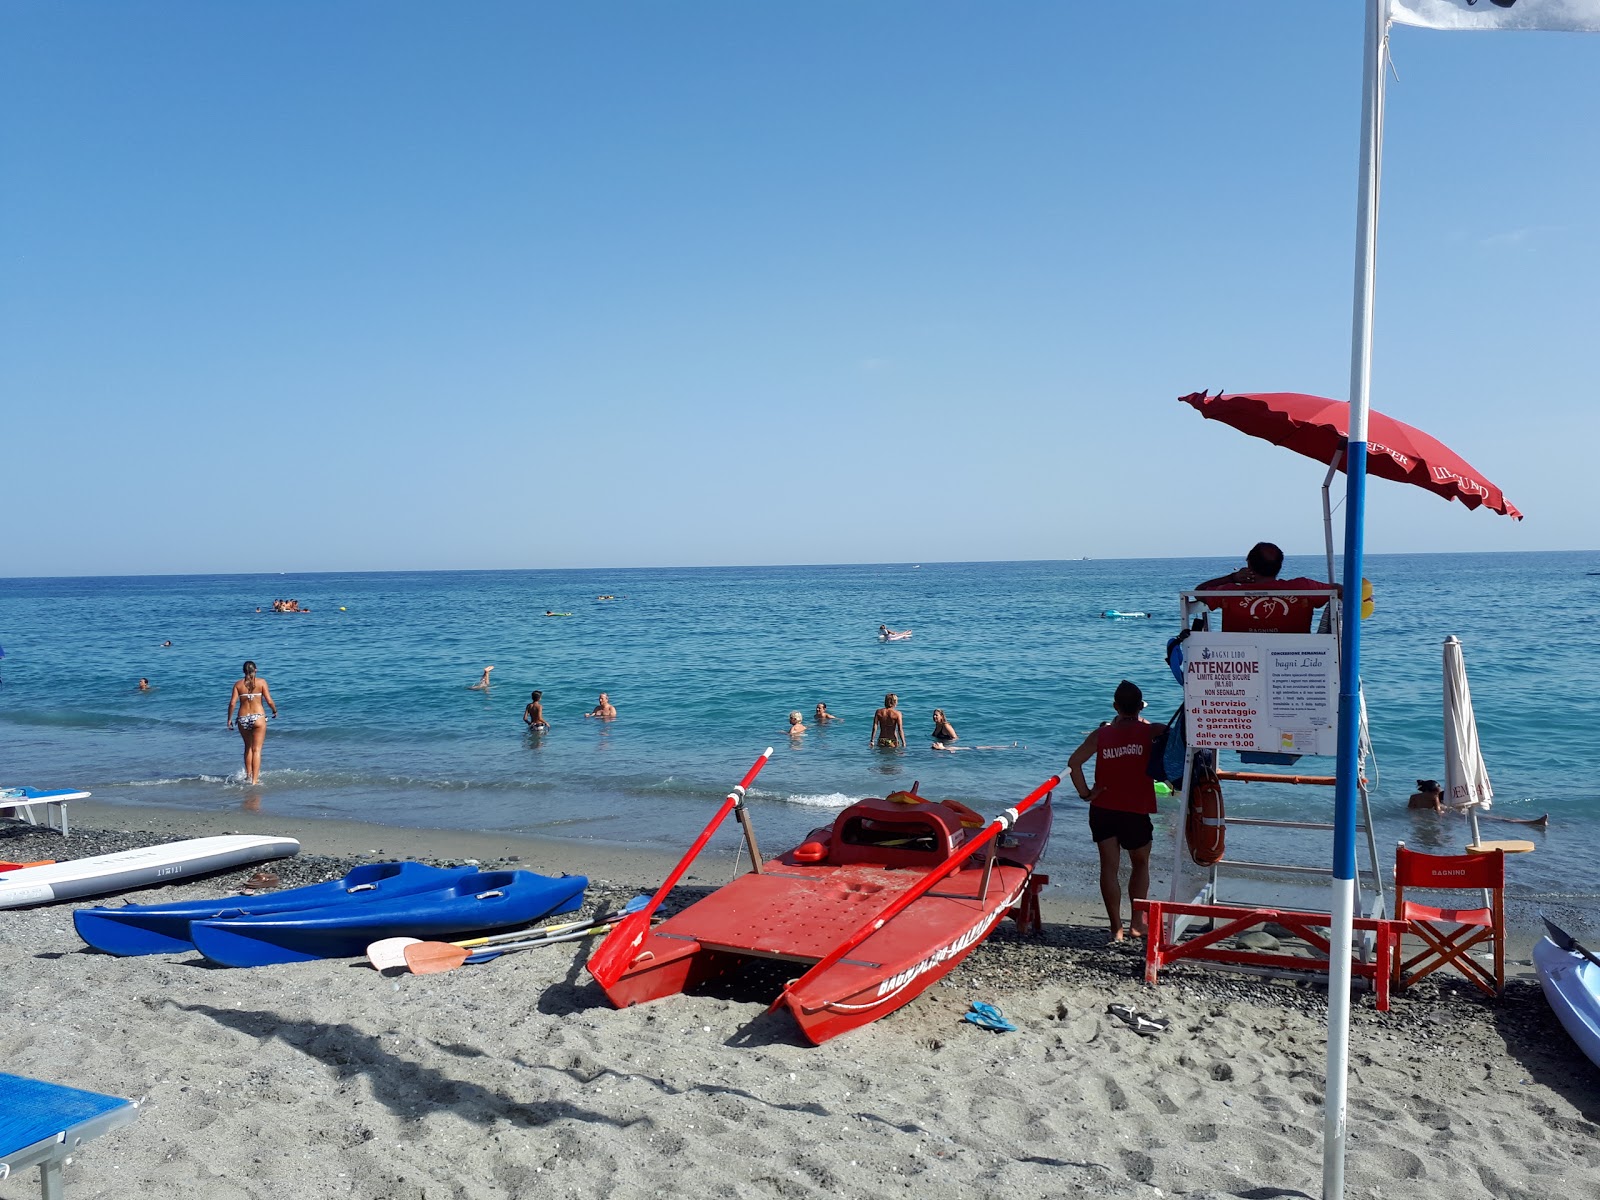 Foto de Spiaggia Celle con muy limpio nivel de limpieza